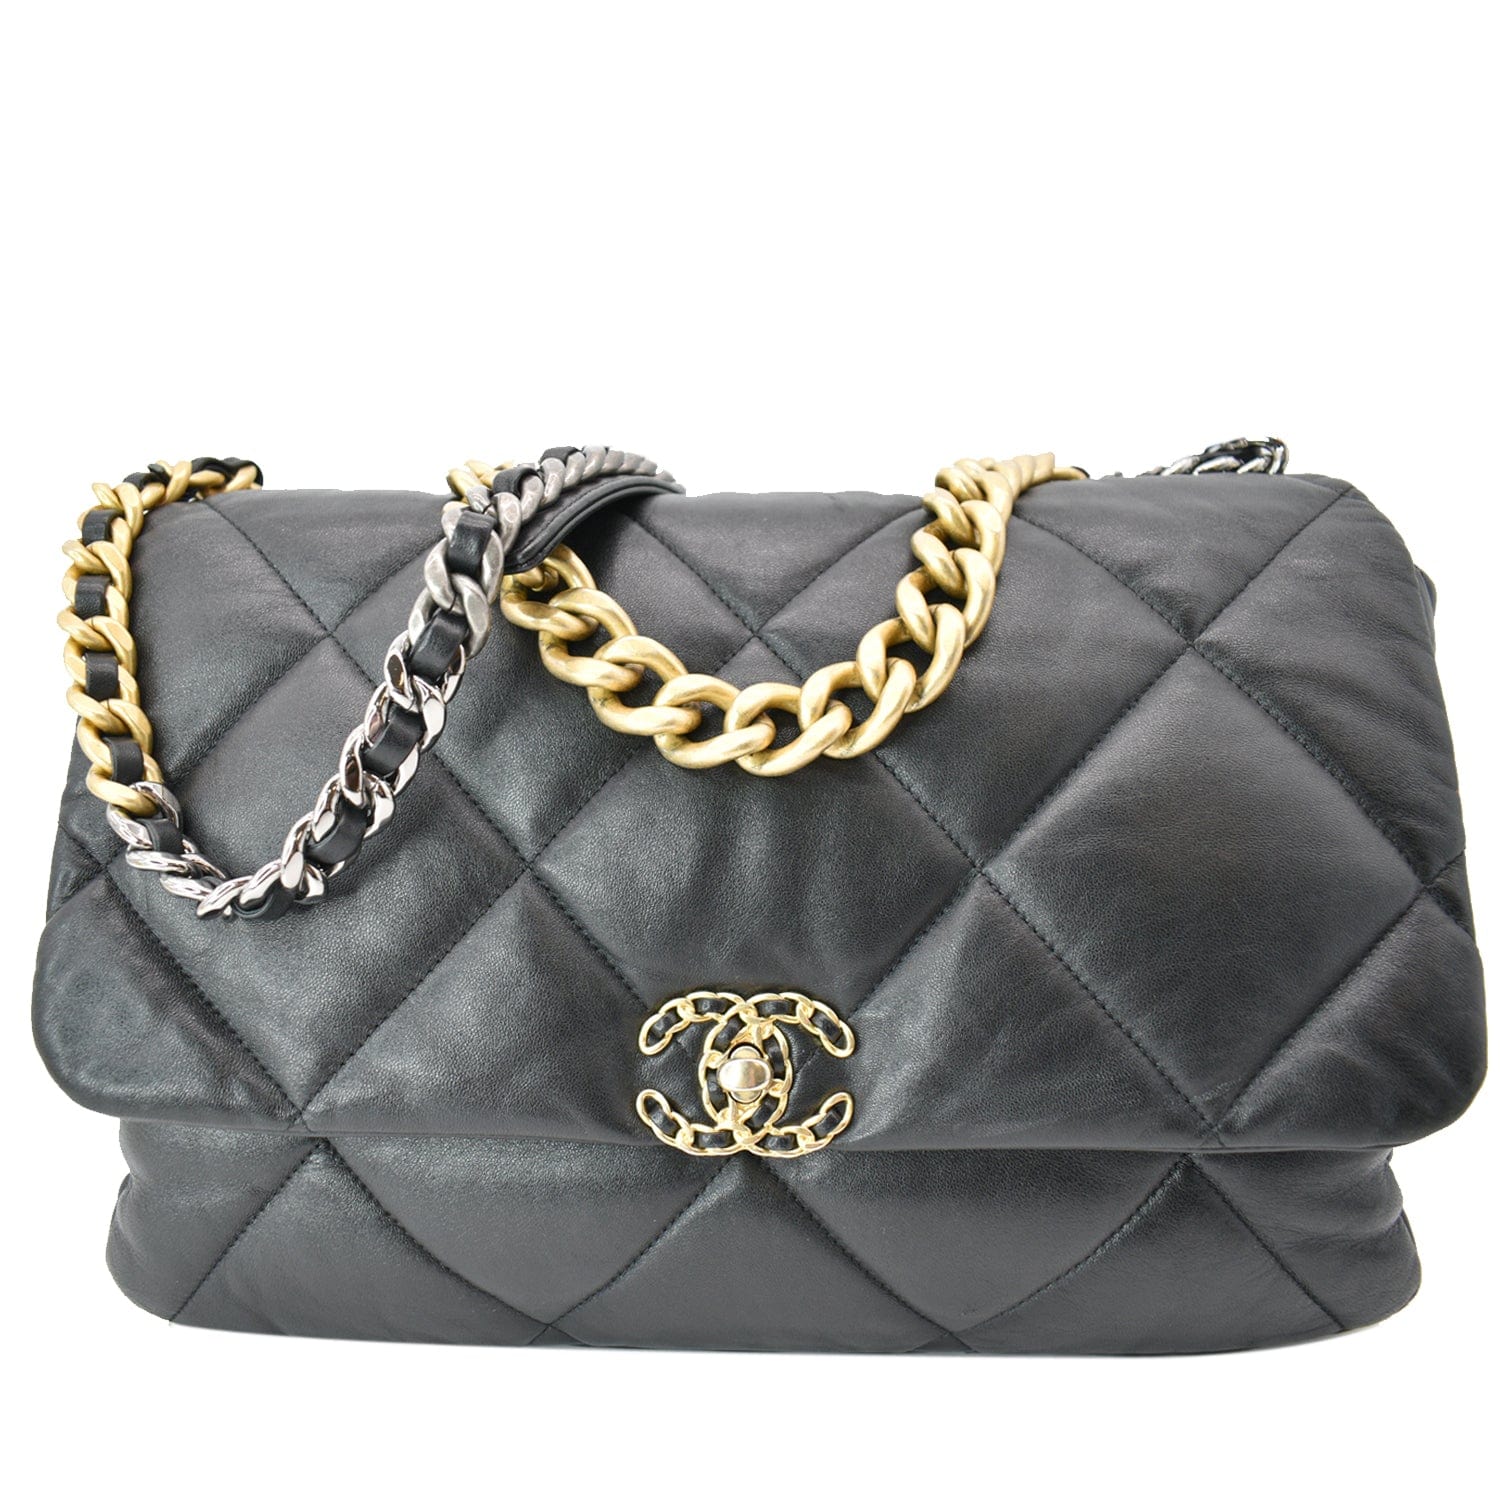 Chanel Black Large 19 Flap Bag